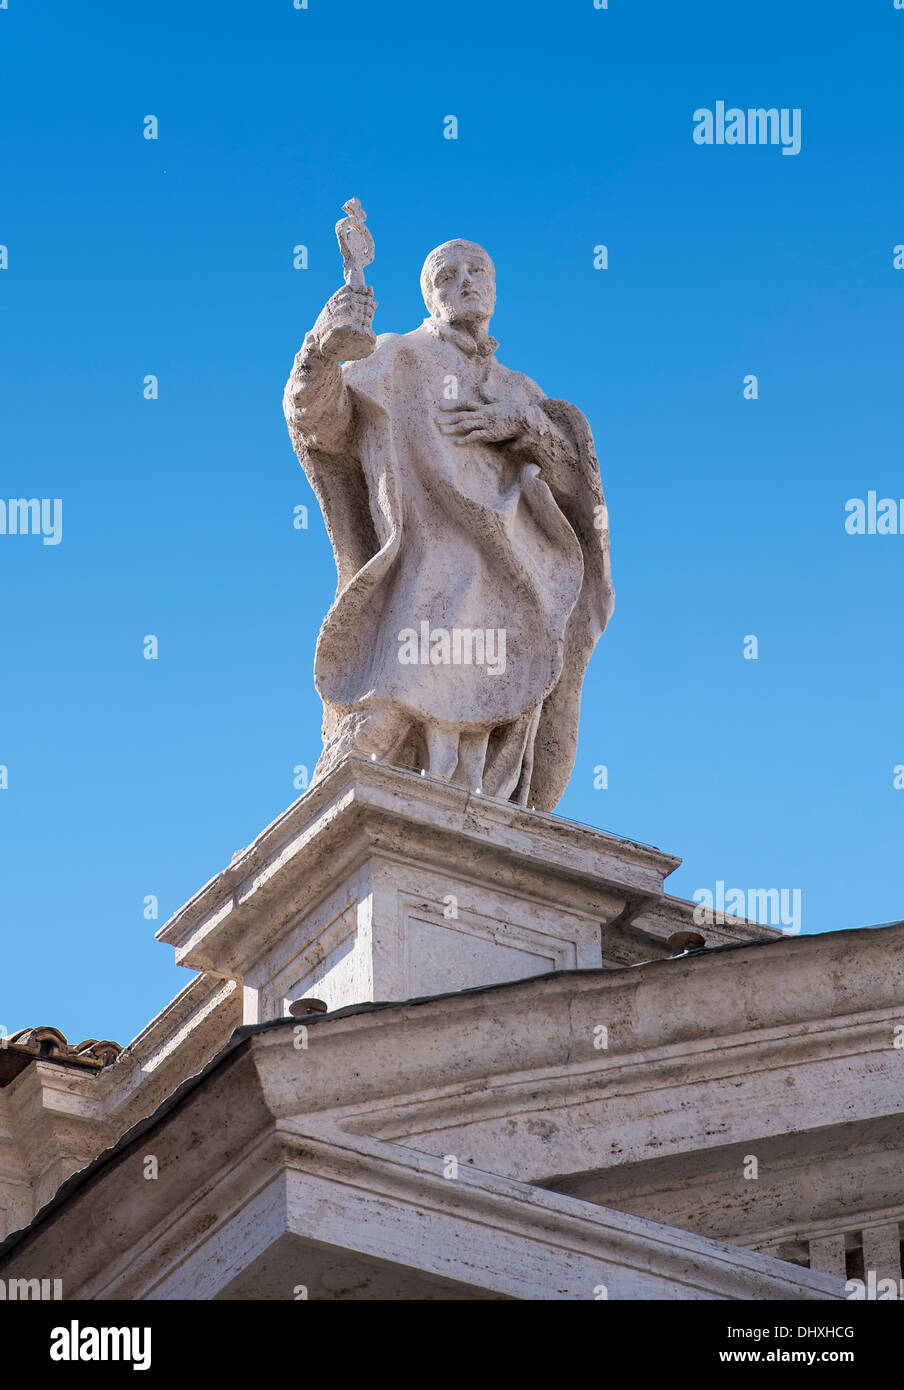 Statue de st norbert, colonnade du Bernin entourant la place Saint Pierre dans la cité du Vatican, Rome, Italie Banque D'Images